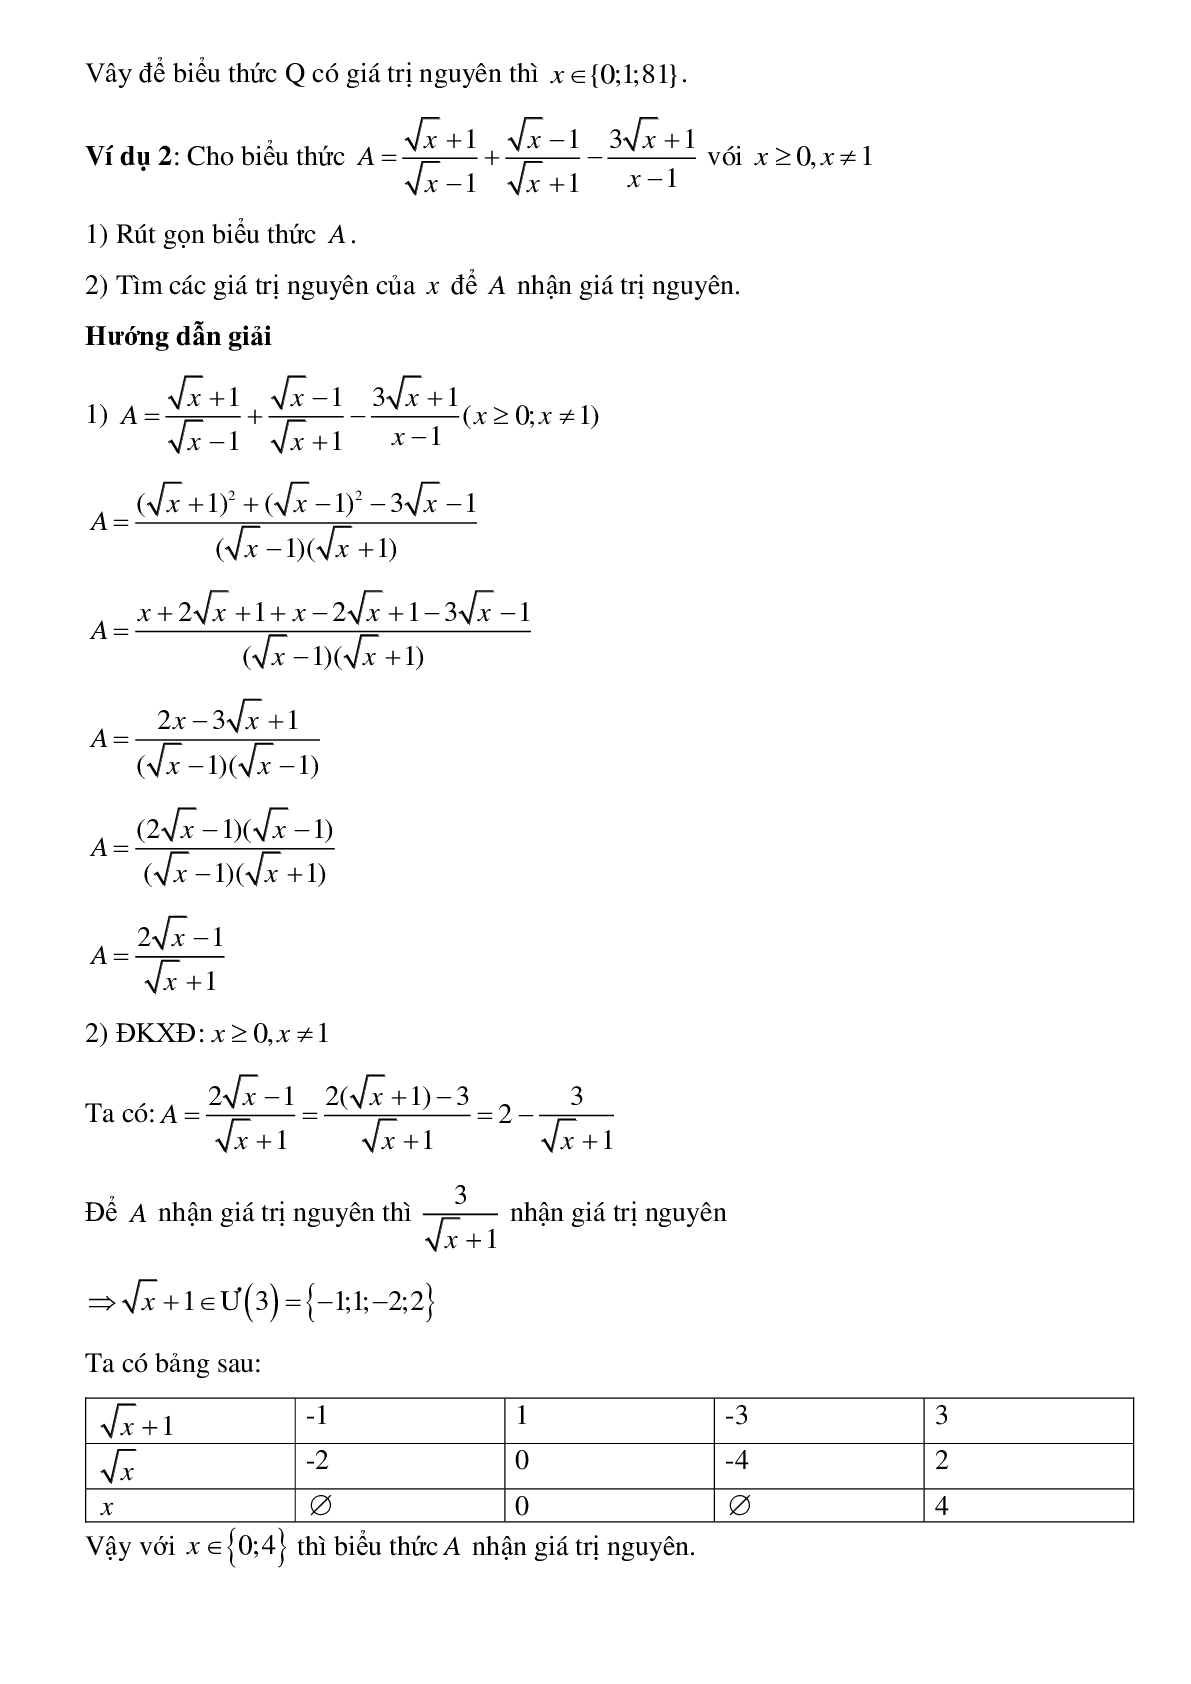 Phương pháp giải tìm x để biểu thức đạt giá trị nguyên chọn lọc (trang 3)